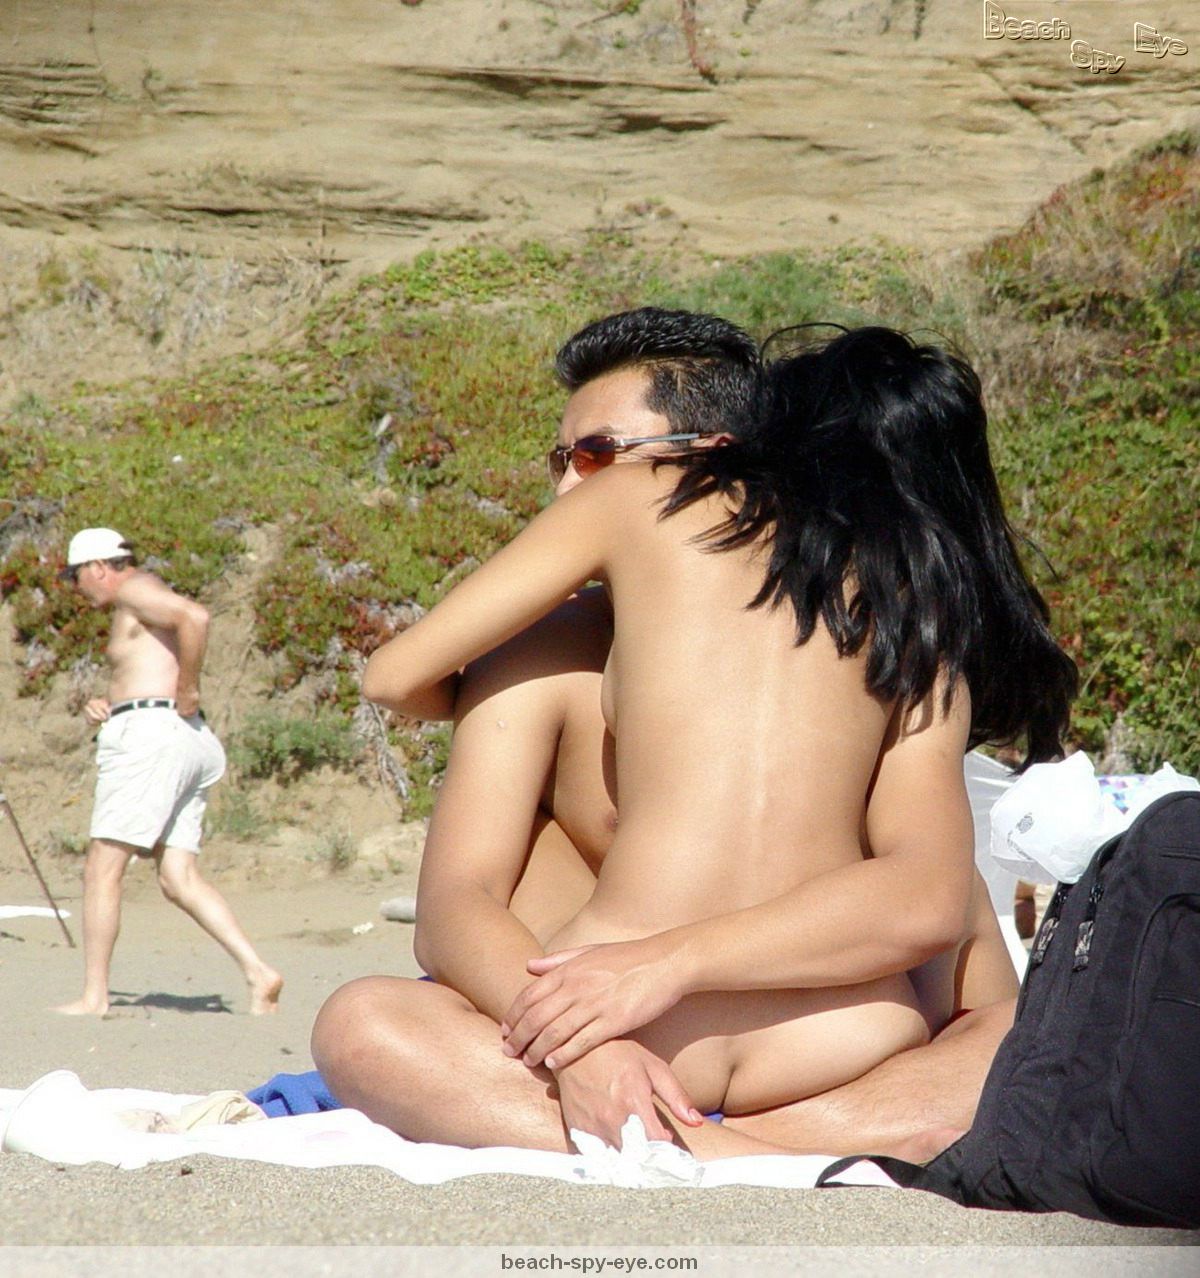 Thousands of voyeur-nude-beach photos and Gigabytes of voyeur-nude-beach vi...